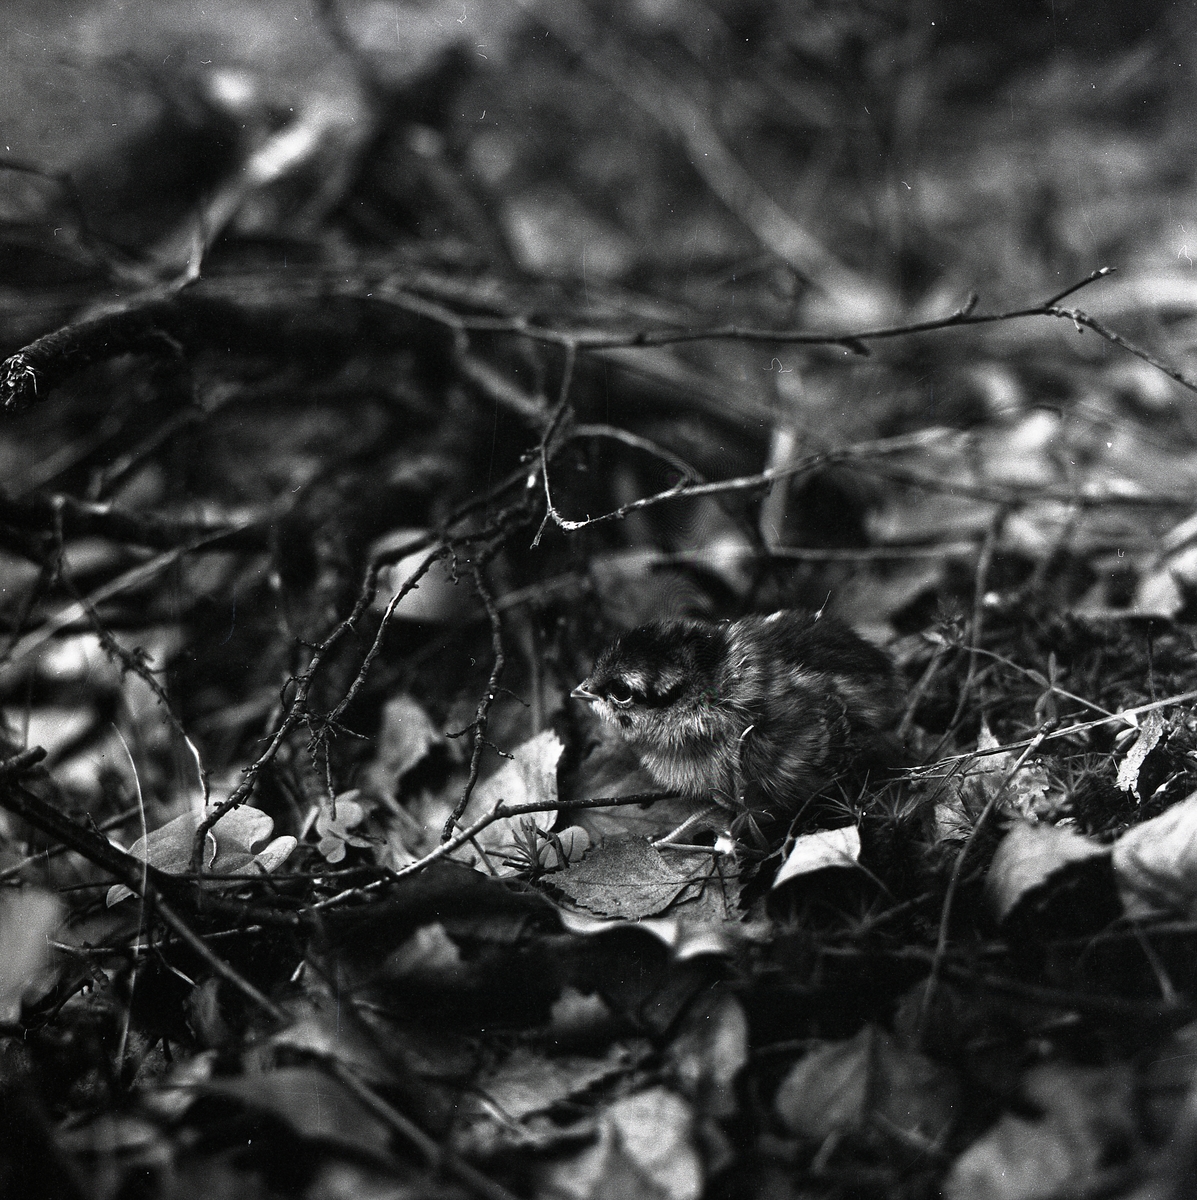 En fågelunge av Järpe sitter på marken bland kvistar och löv 15 juni 1956.